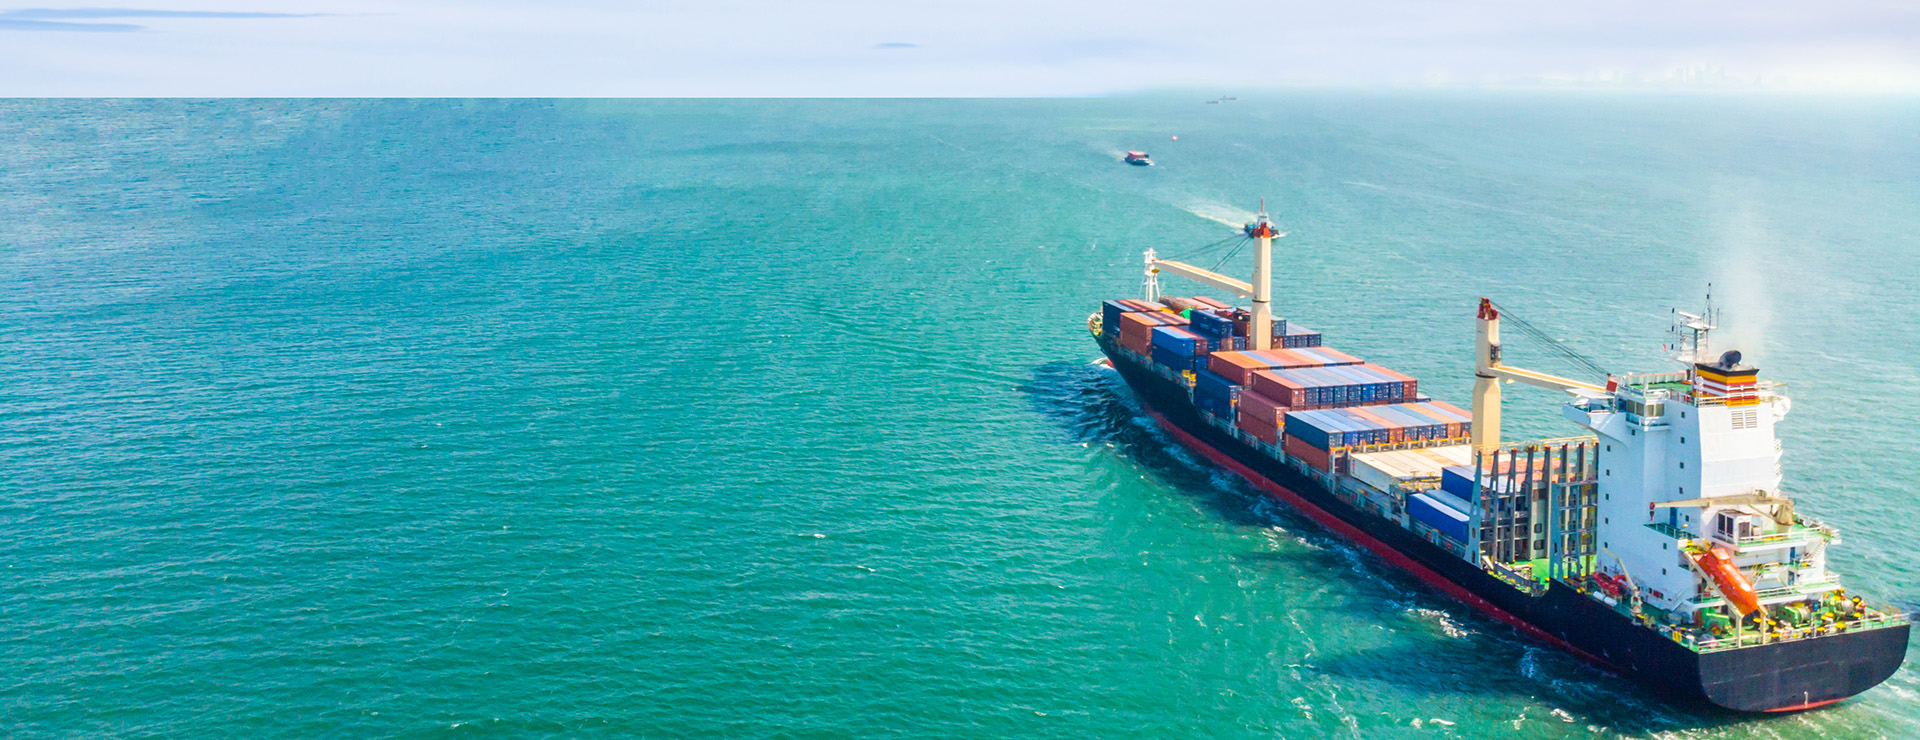 Вид с воздуха на грузовые суда, которые курсируют посреди моря и перевозят контейнеры в порт.Импортно-экспортная и транспортная логистика и международные перевозки морским транспортом.